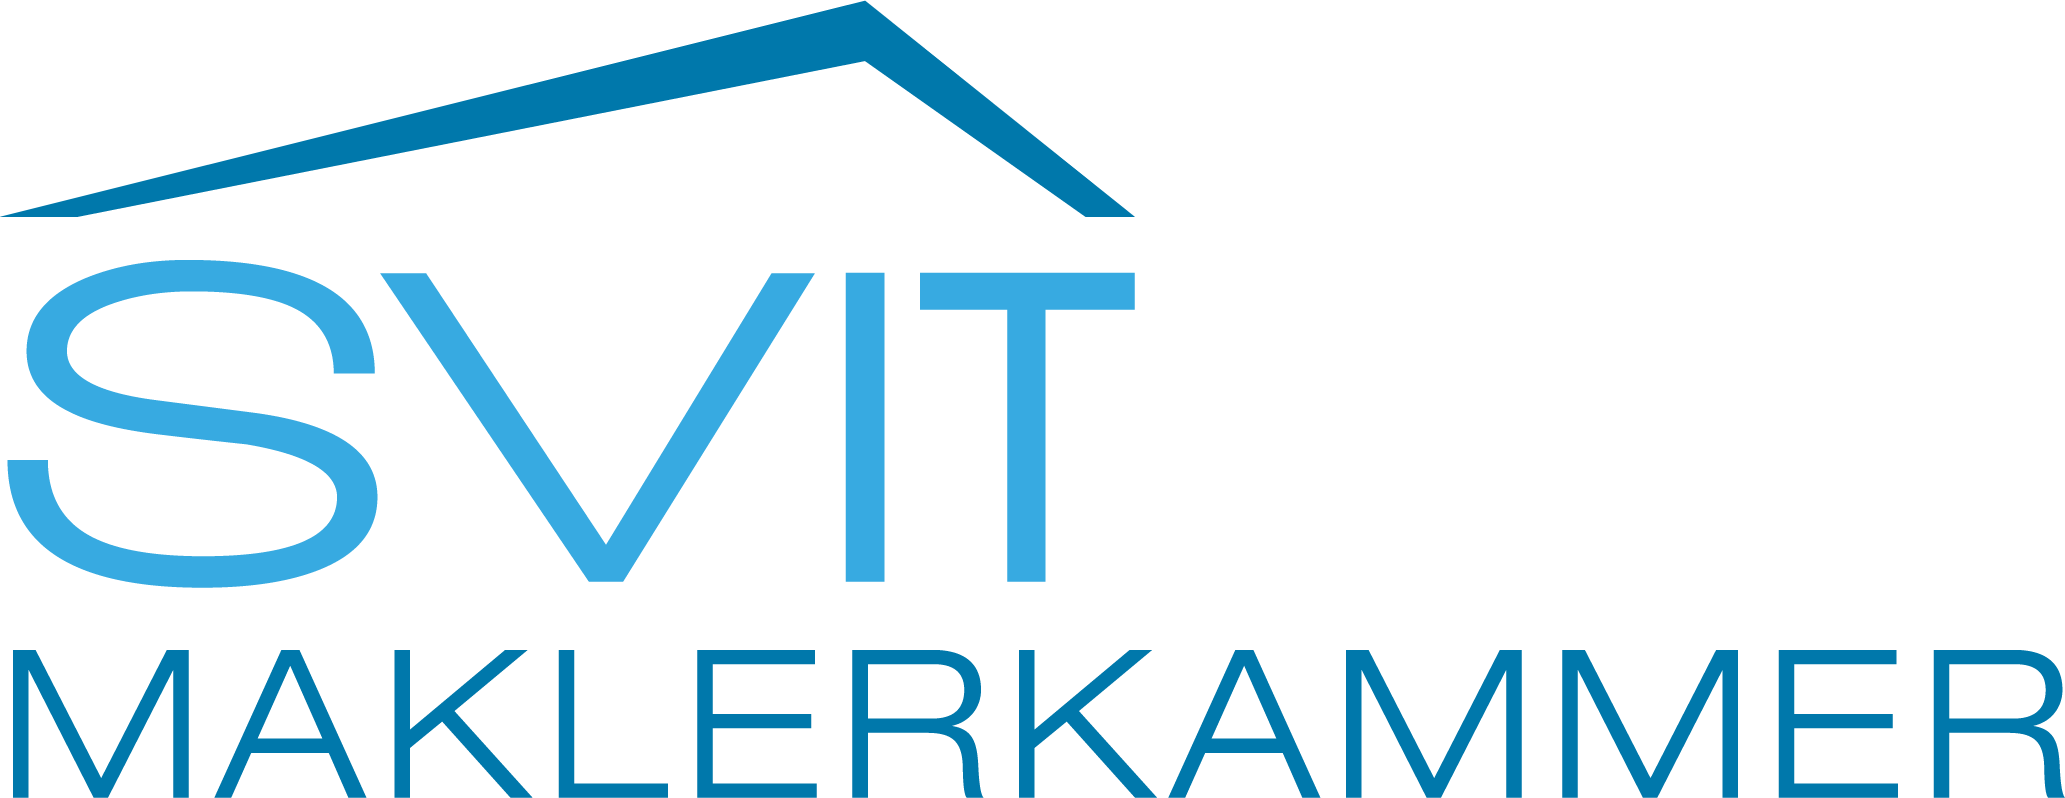 Logo mit Link zur Bewertungsexperten-Kammer SVIT